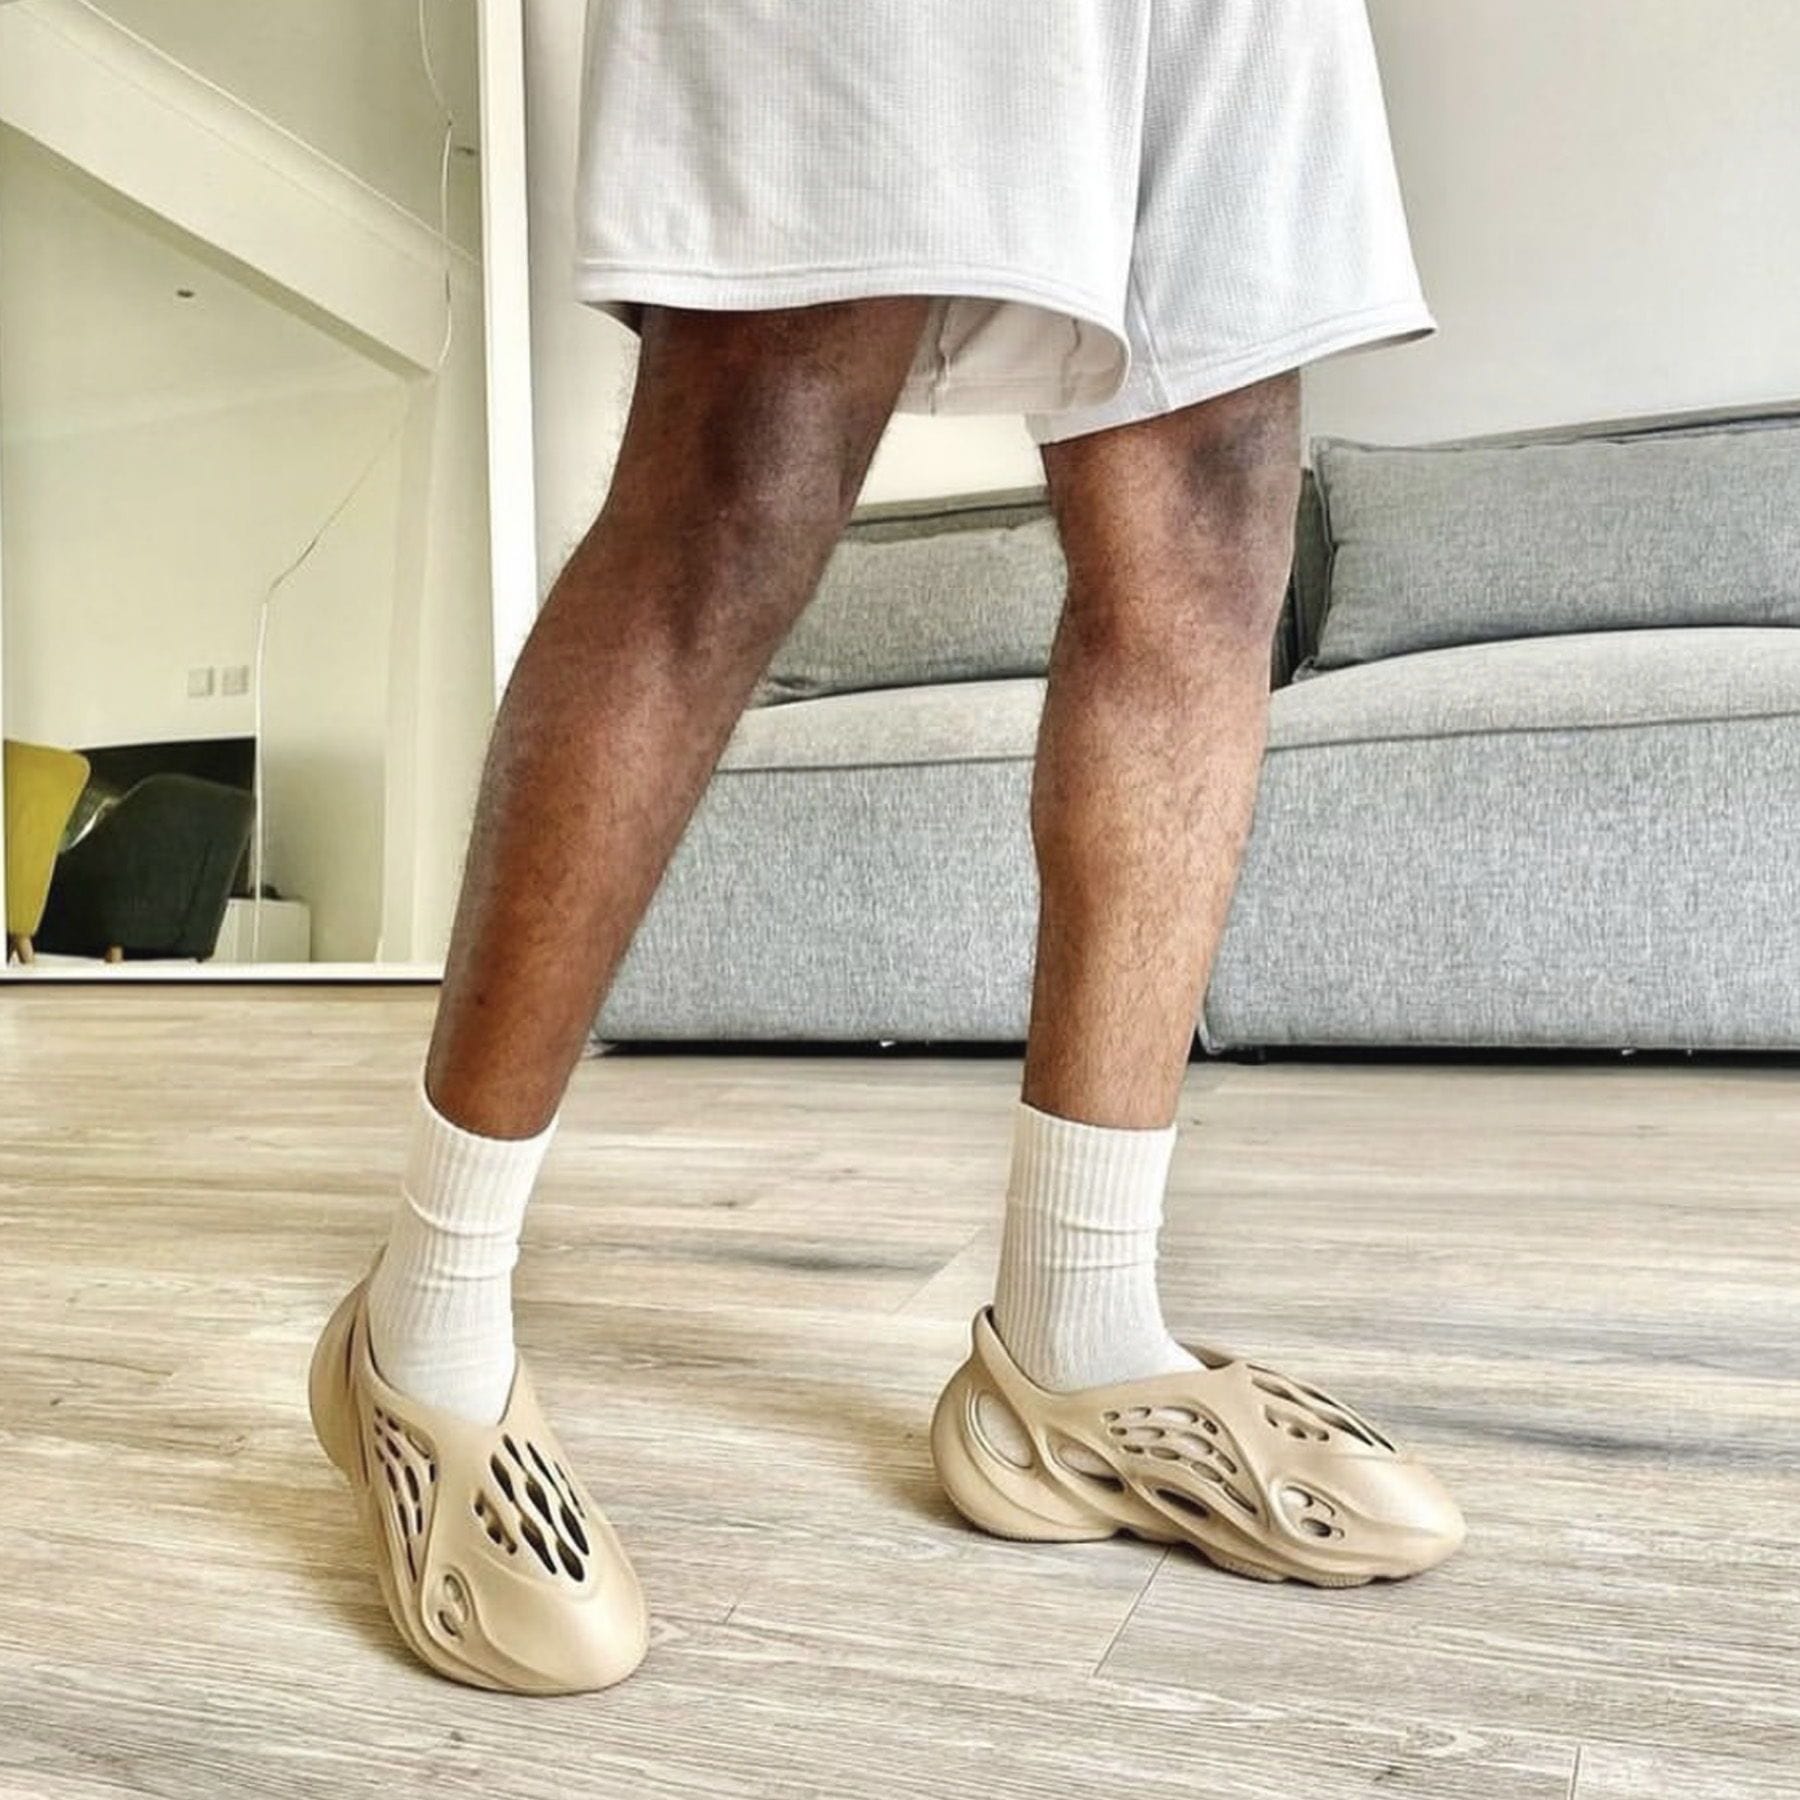 adidas Yeezy Foam Runner 'Ochre' — Kick Game